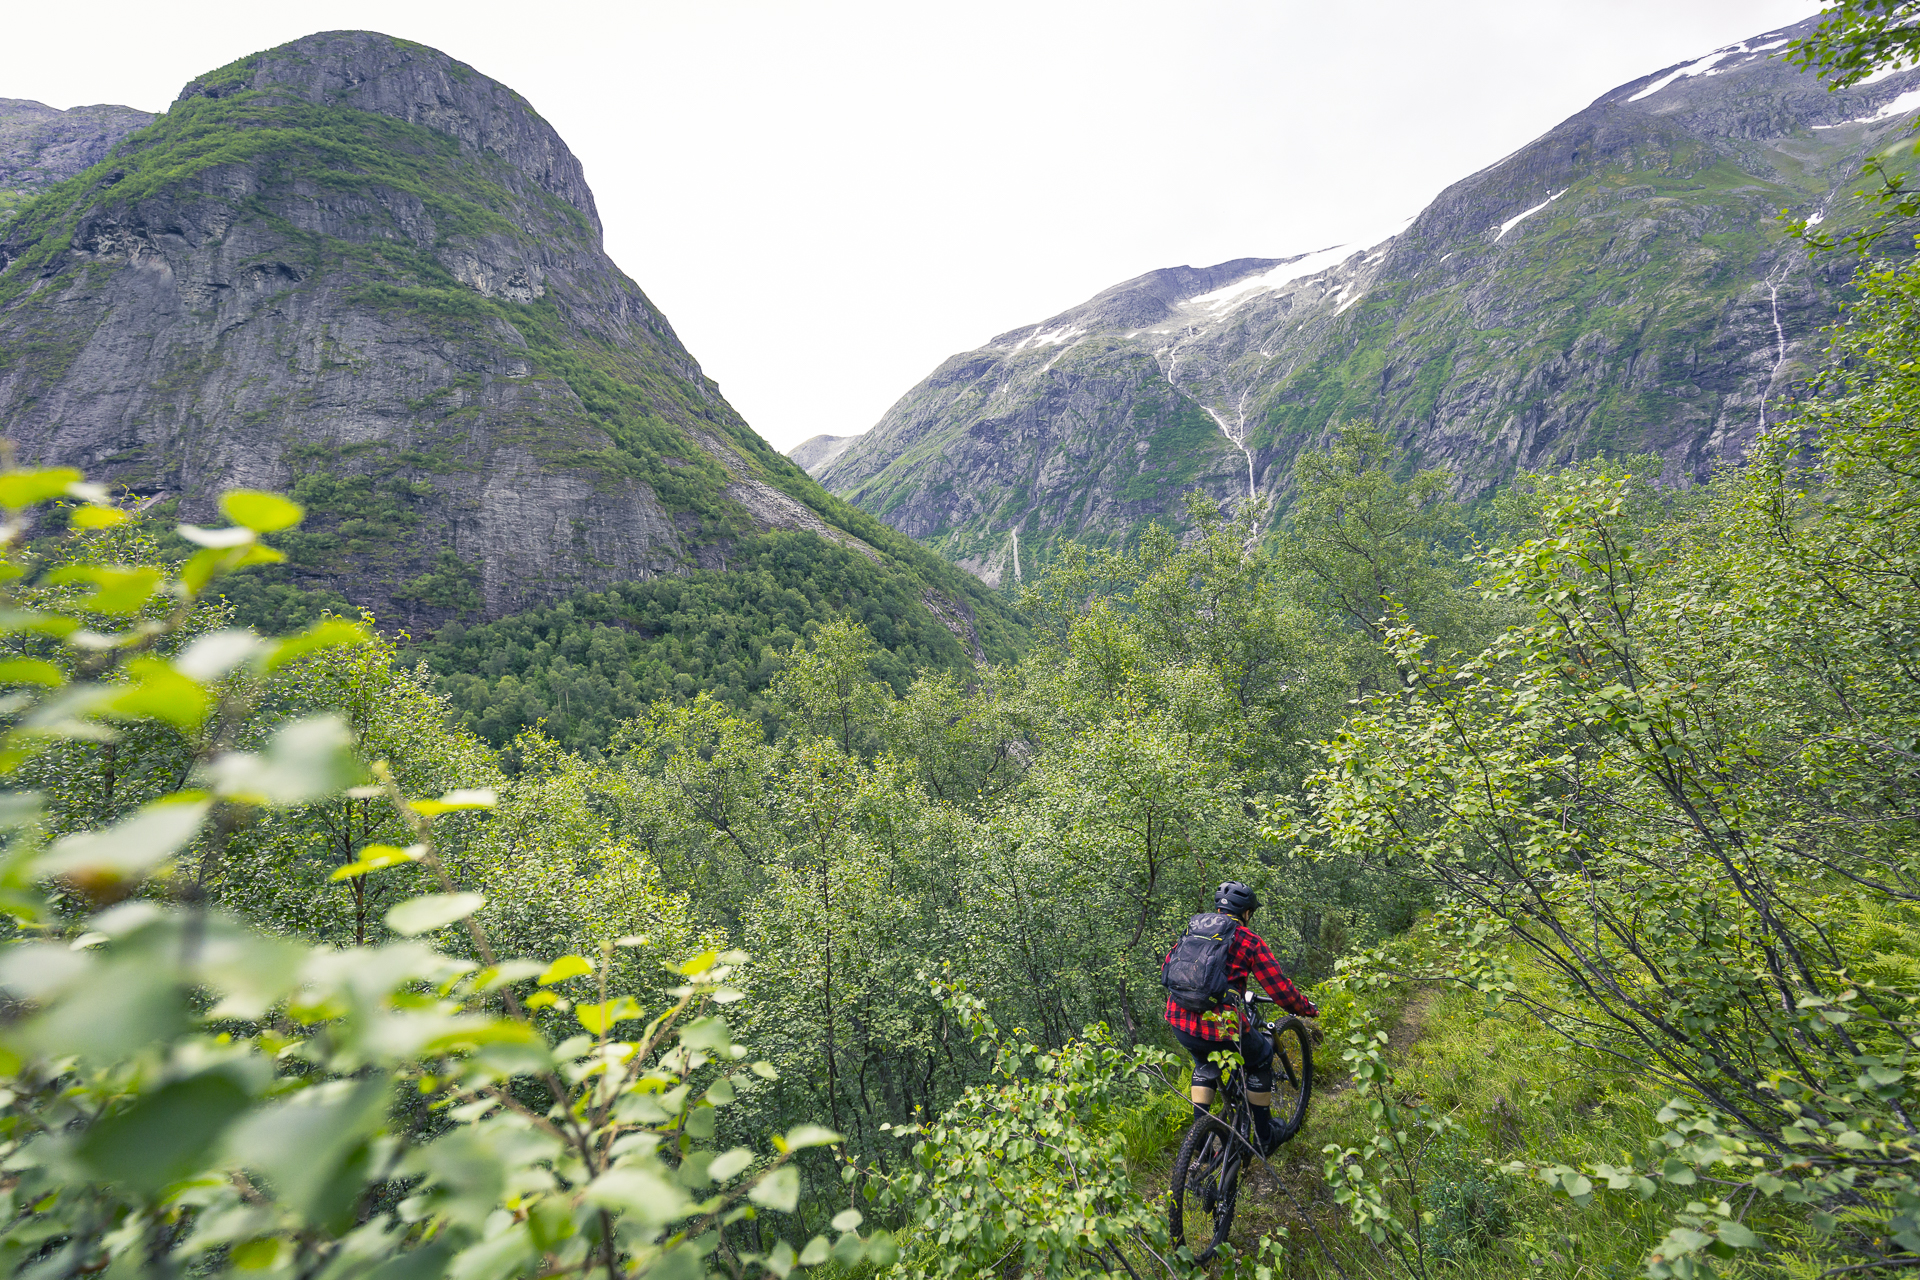 Alex mit dem Mountainbike auf dem Himalaya-Trail im Süden von Norwegen